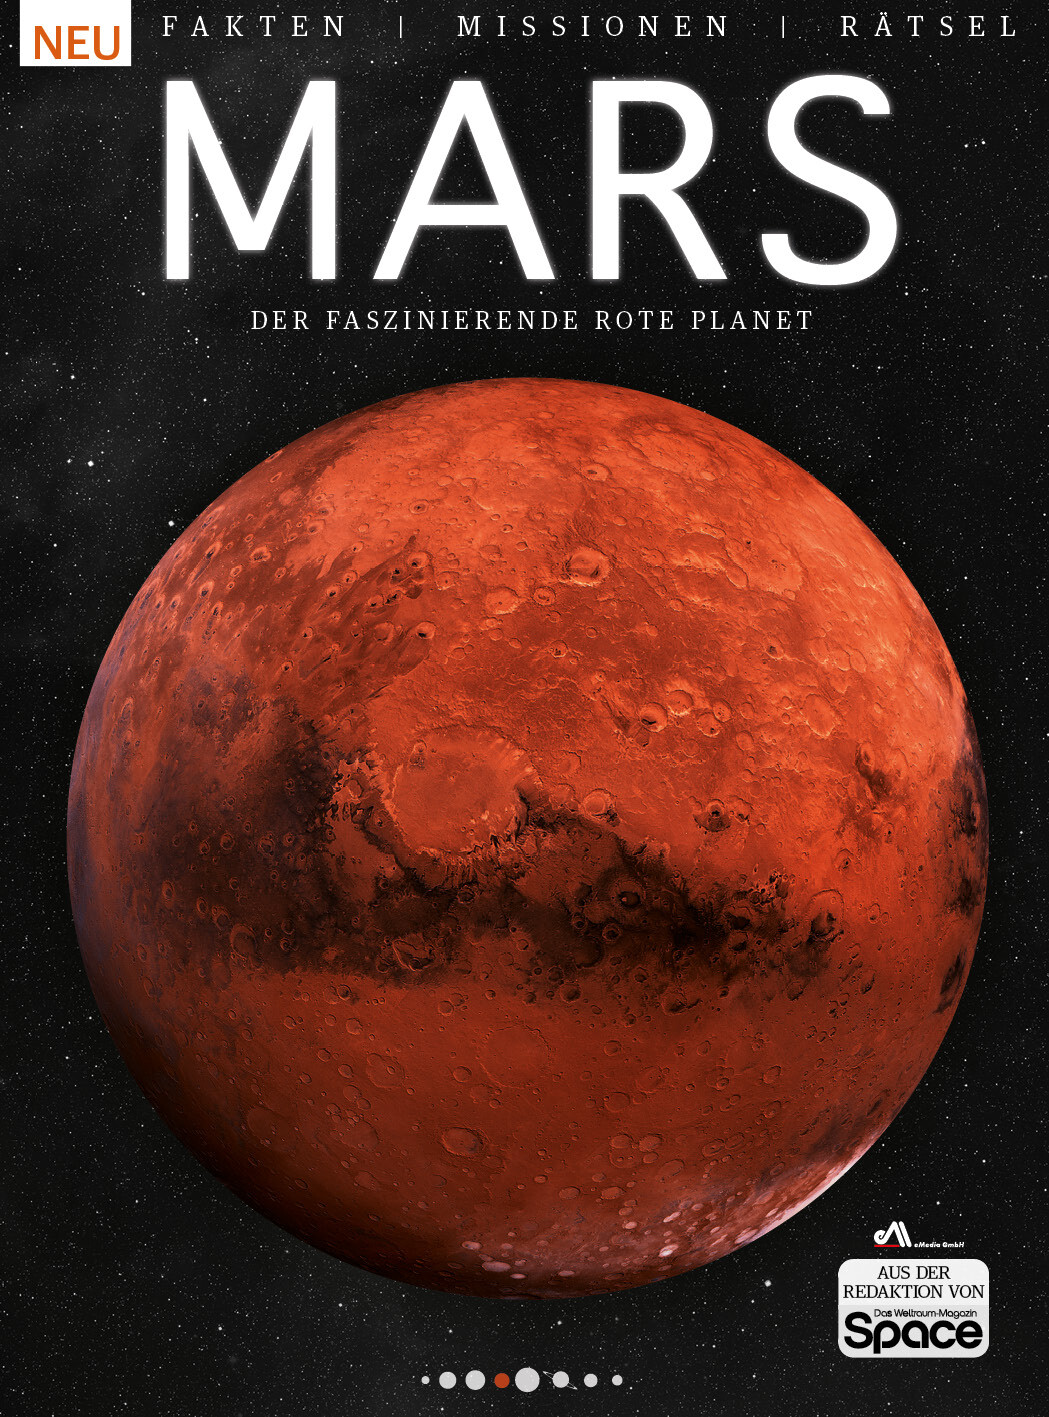 Space Spezial 2020 - Mars